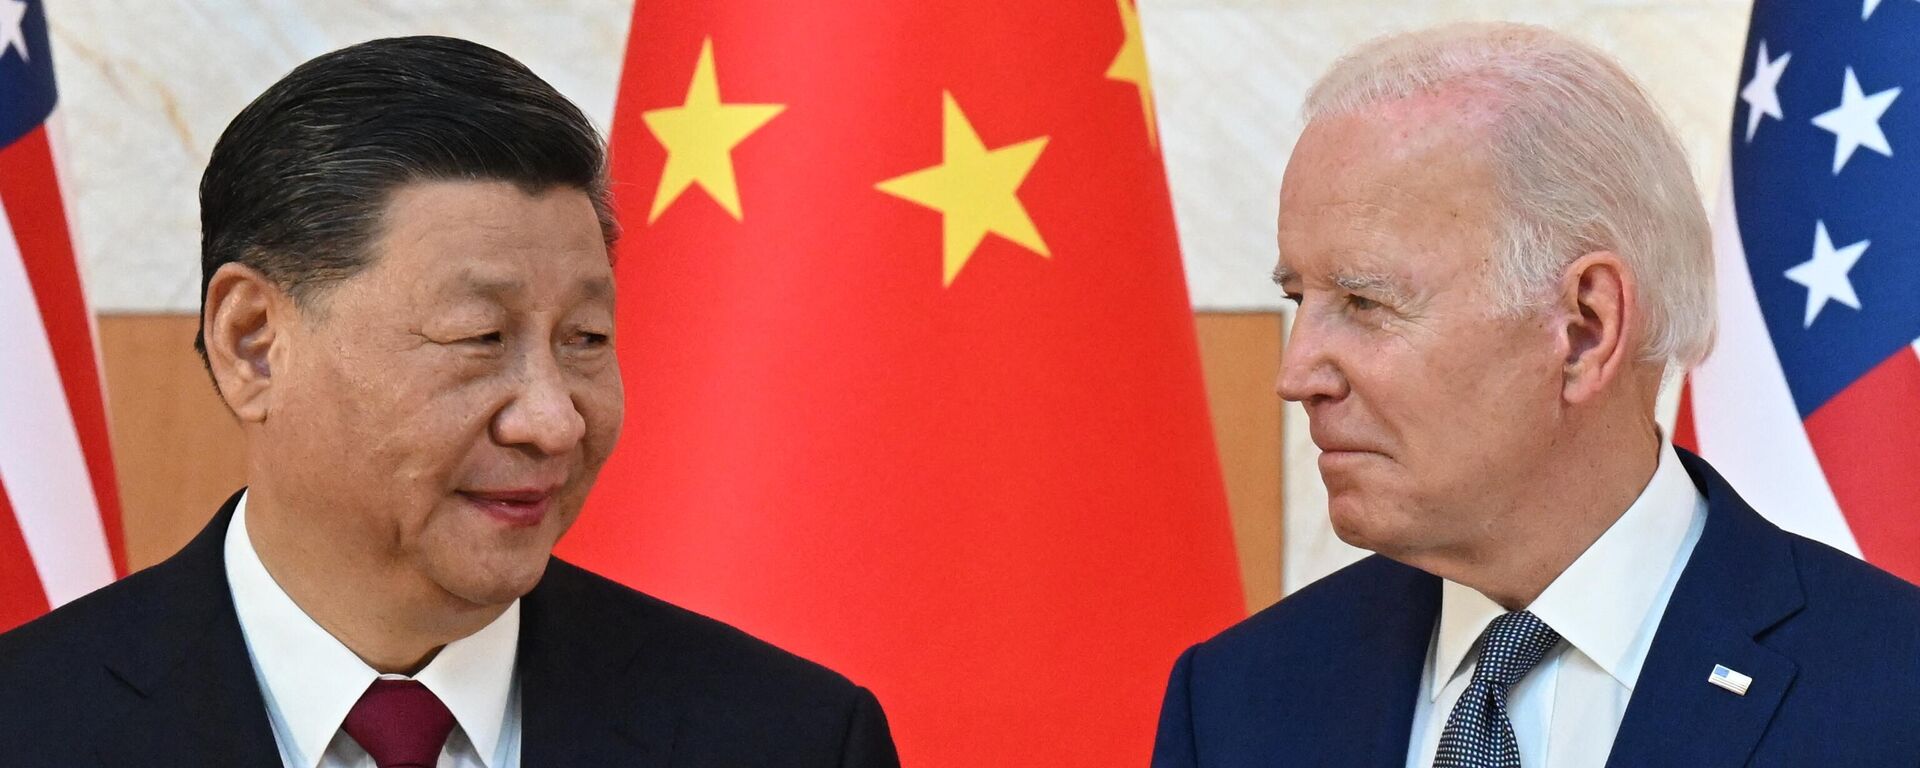 ABD Başkanı Joe Biden ile Çin Devlet Başkanı Şi Cinping arasındaki ilk yüz yüze görüşme, Endonezya'nın Bali Adası'nda düzenlenen G20 zirvesinde gerçekleşti. - Sputnik Türkiye, 1920, 15.11.2022